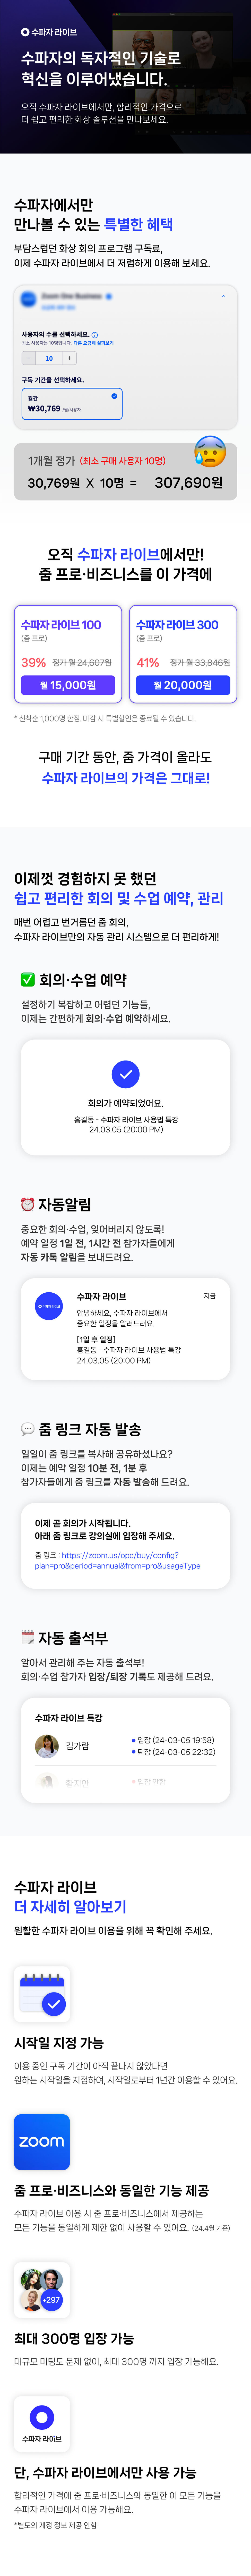 수파자 라이브 상품 소개